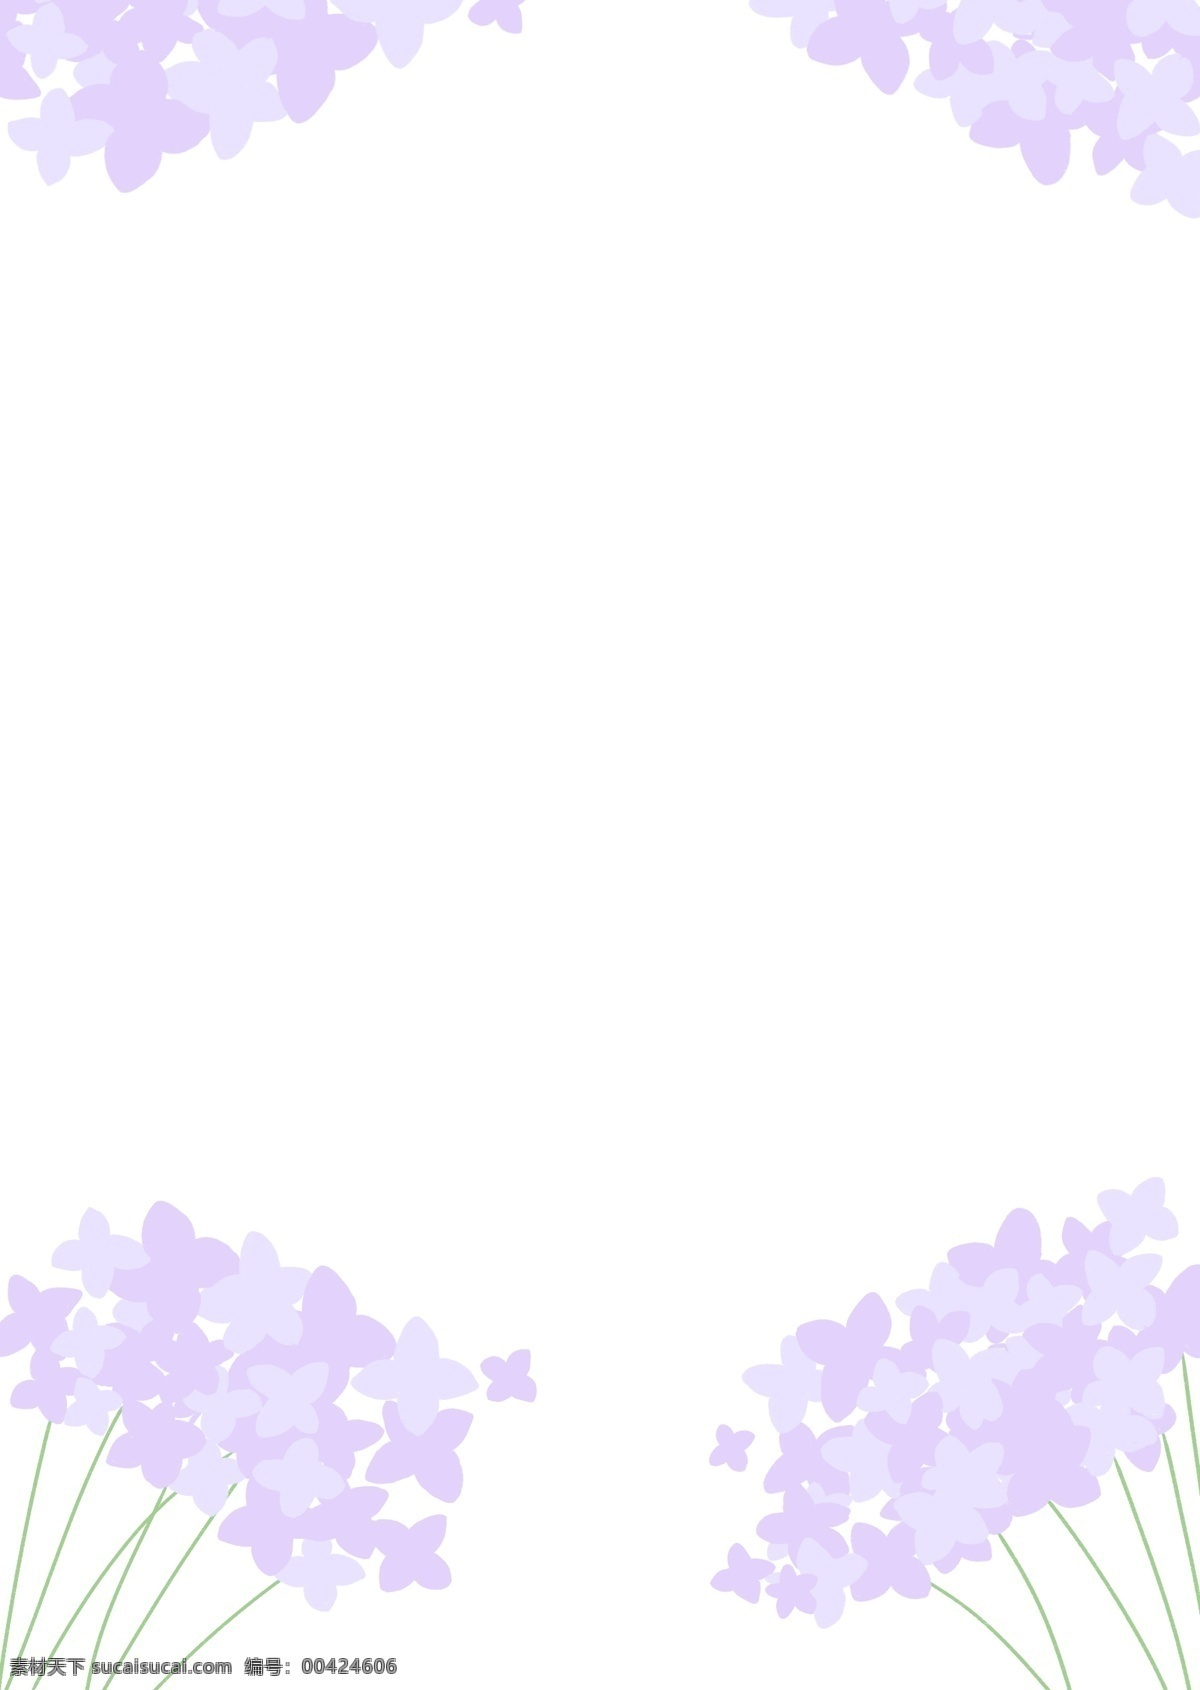 紫色 花束 小 清新 背景 图 插图 植物 花卉 小清新 壁纸 背景图 插画 紫色花 原创 自然景观 自然风光